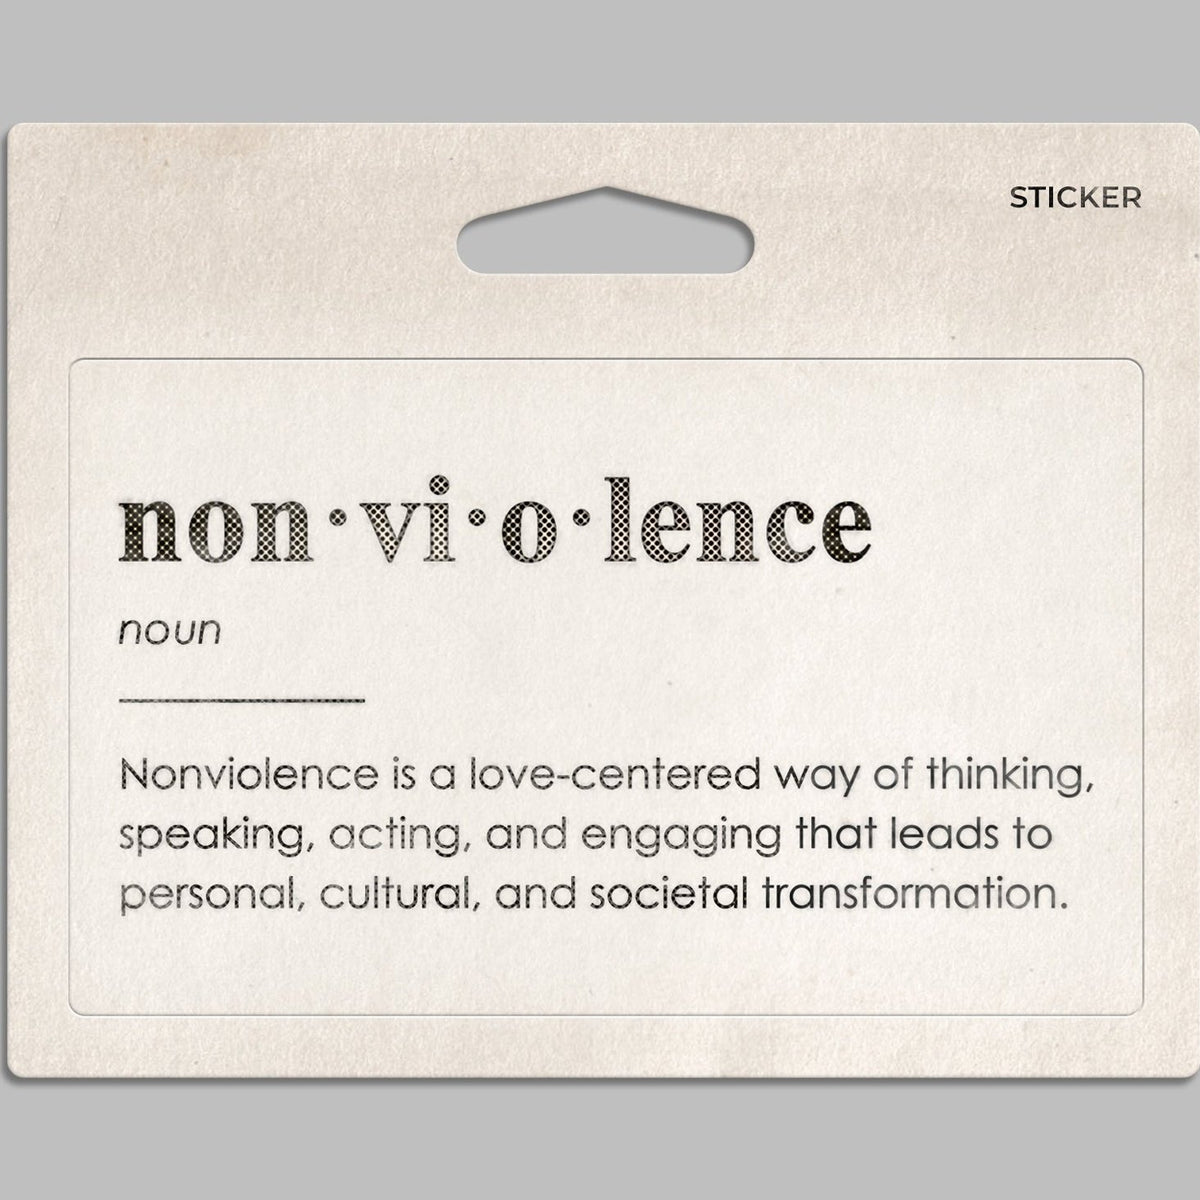 Nonviolence Definition Sticker